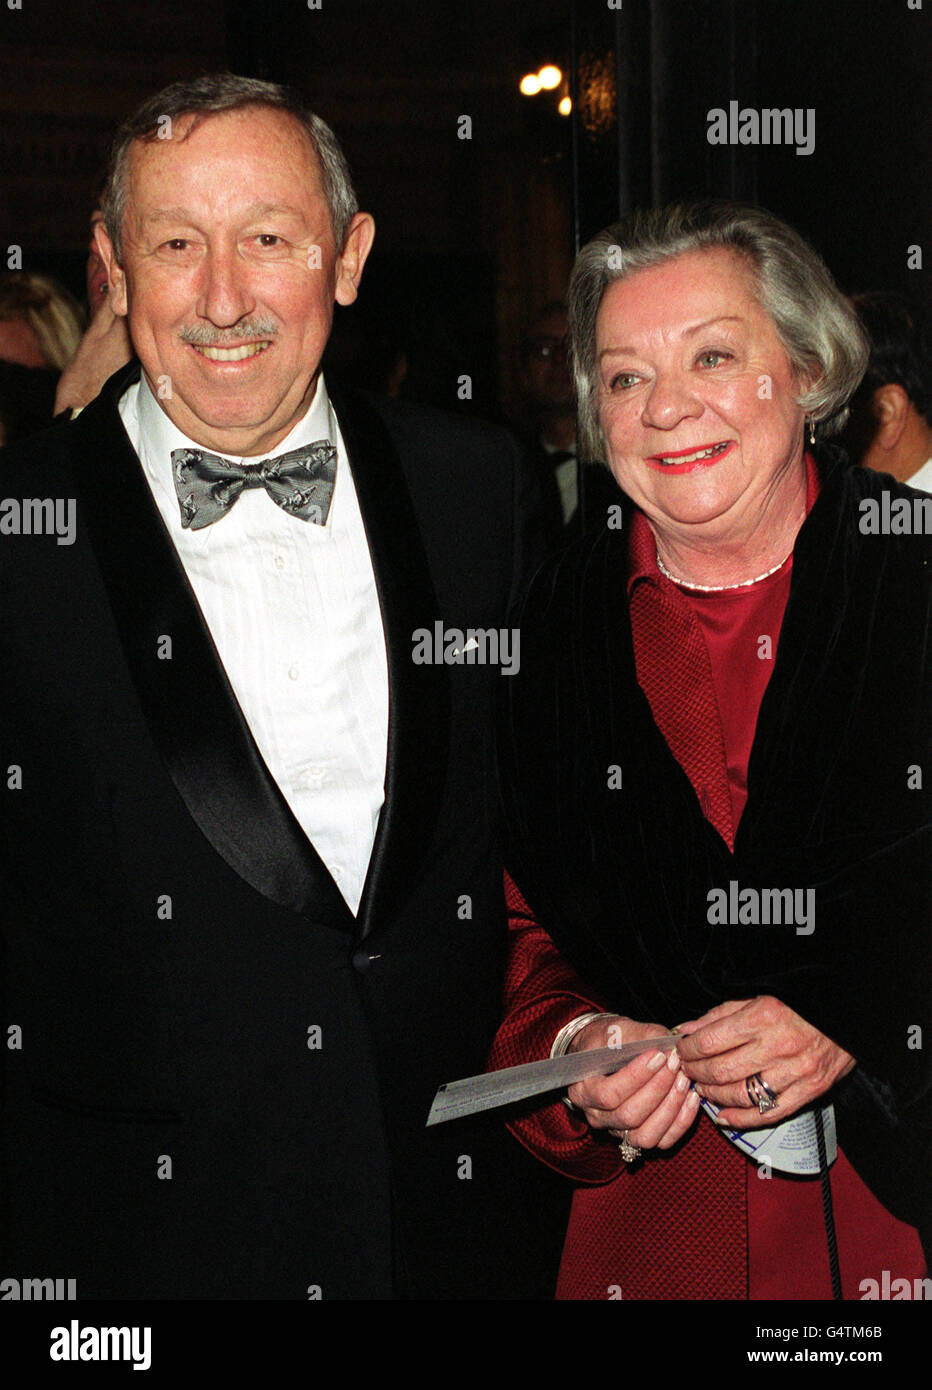 Roy Edward Disney neveu de Walt Disney et vice-président et chef de l'animation de The Disney Corporation avec son épouse, arrivent pour la première britannique de « Fantasia/2000 » de Walt Disney au Royal Albert Hall, à Londres. Banque D'Images